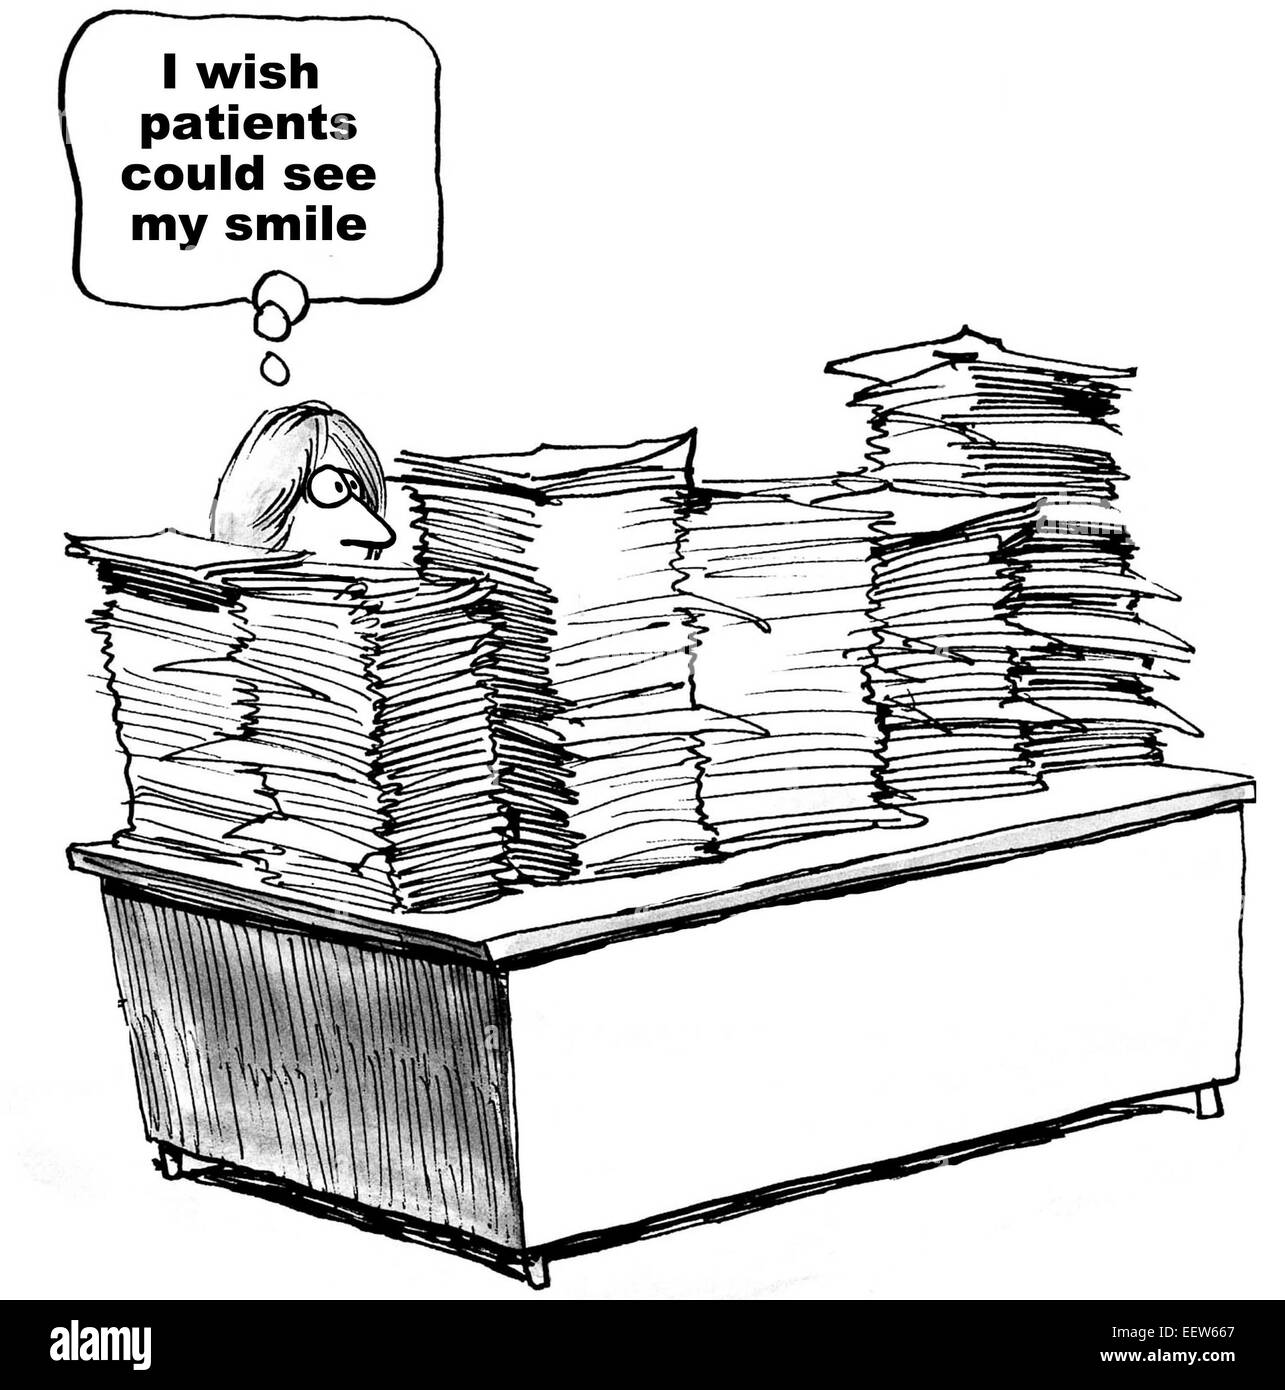 Karikatur von Arzthelferin und Schreibtisch gestapelt extrem hoch mit Papierkram denken sie wünscht sich, dass die Patienten ihr Lächeln sehen konnte Stockfoto